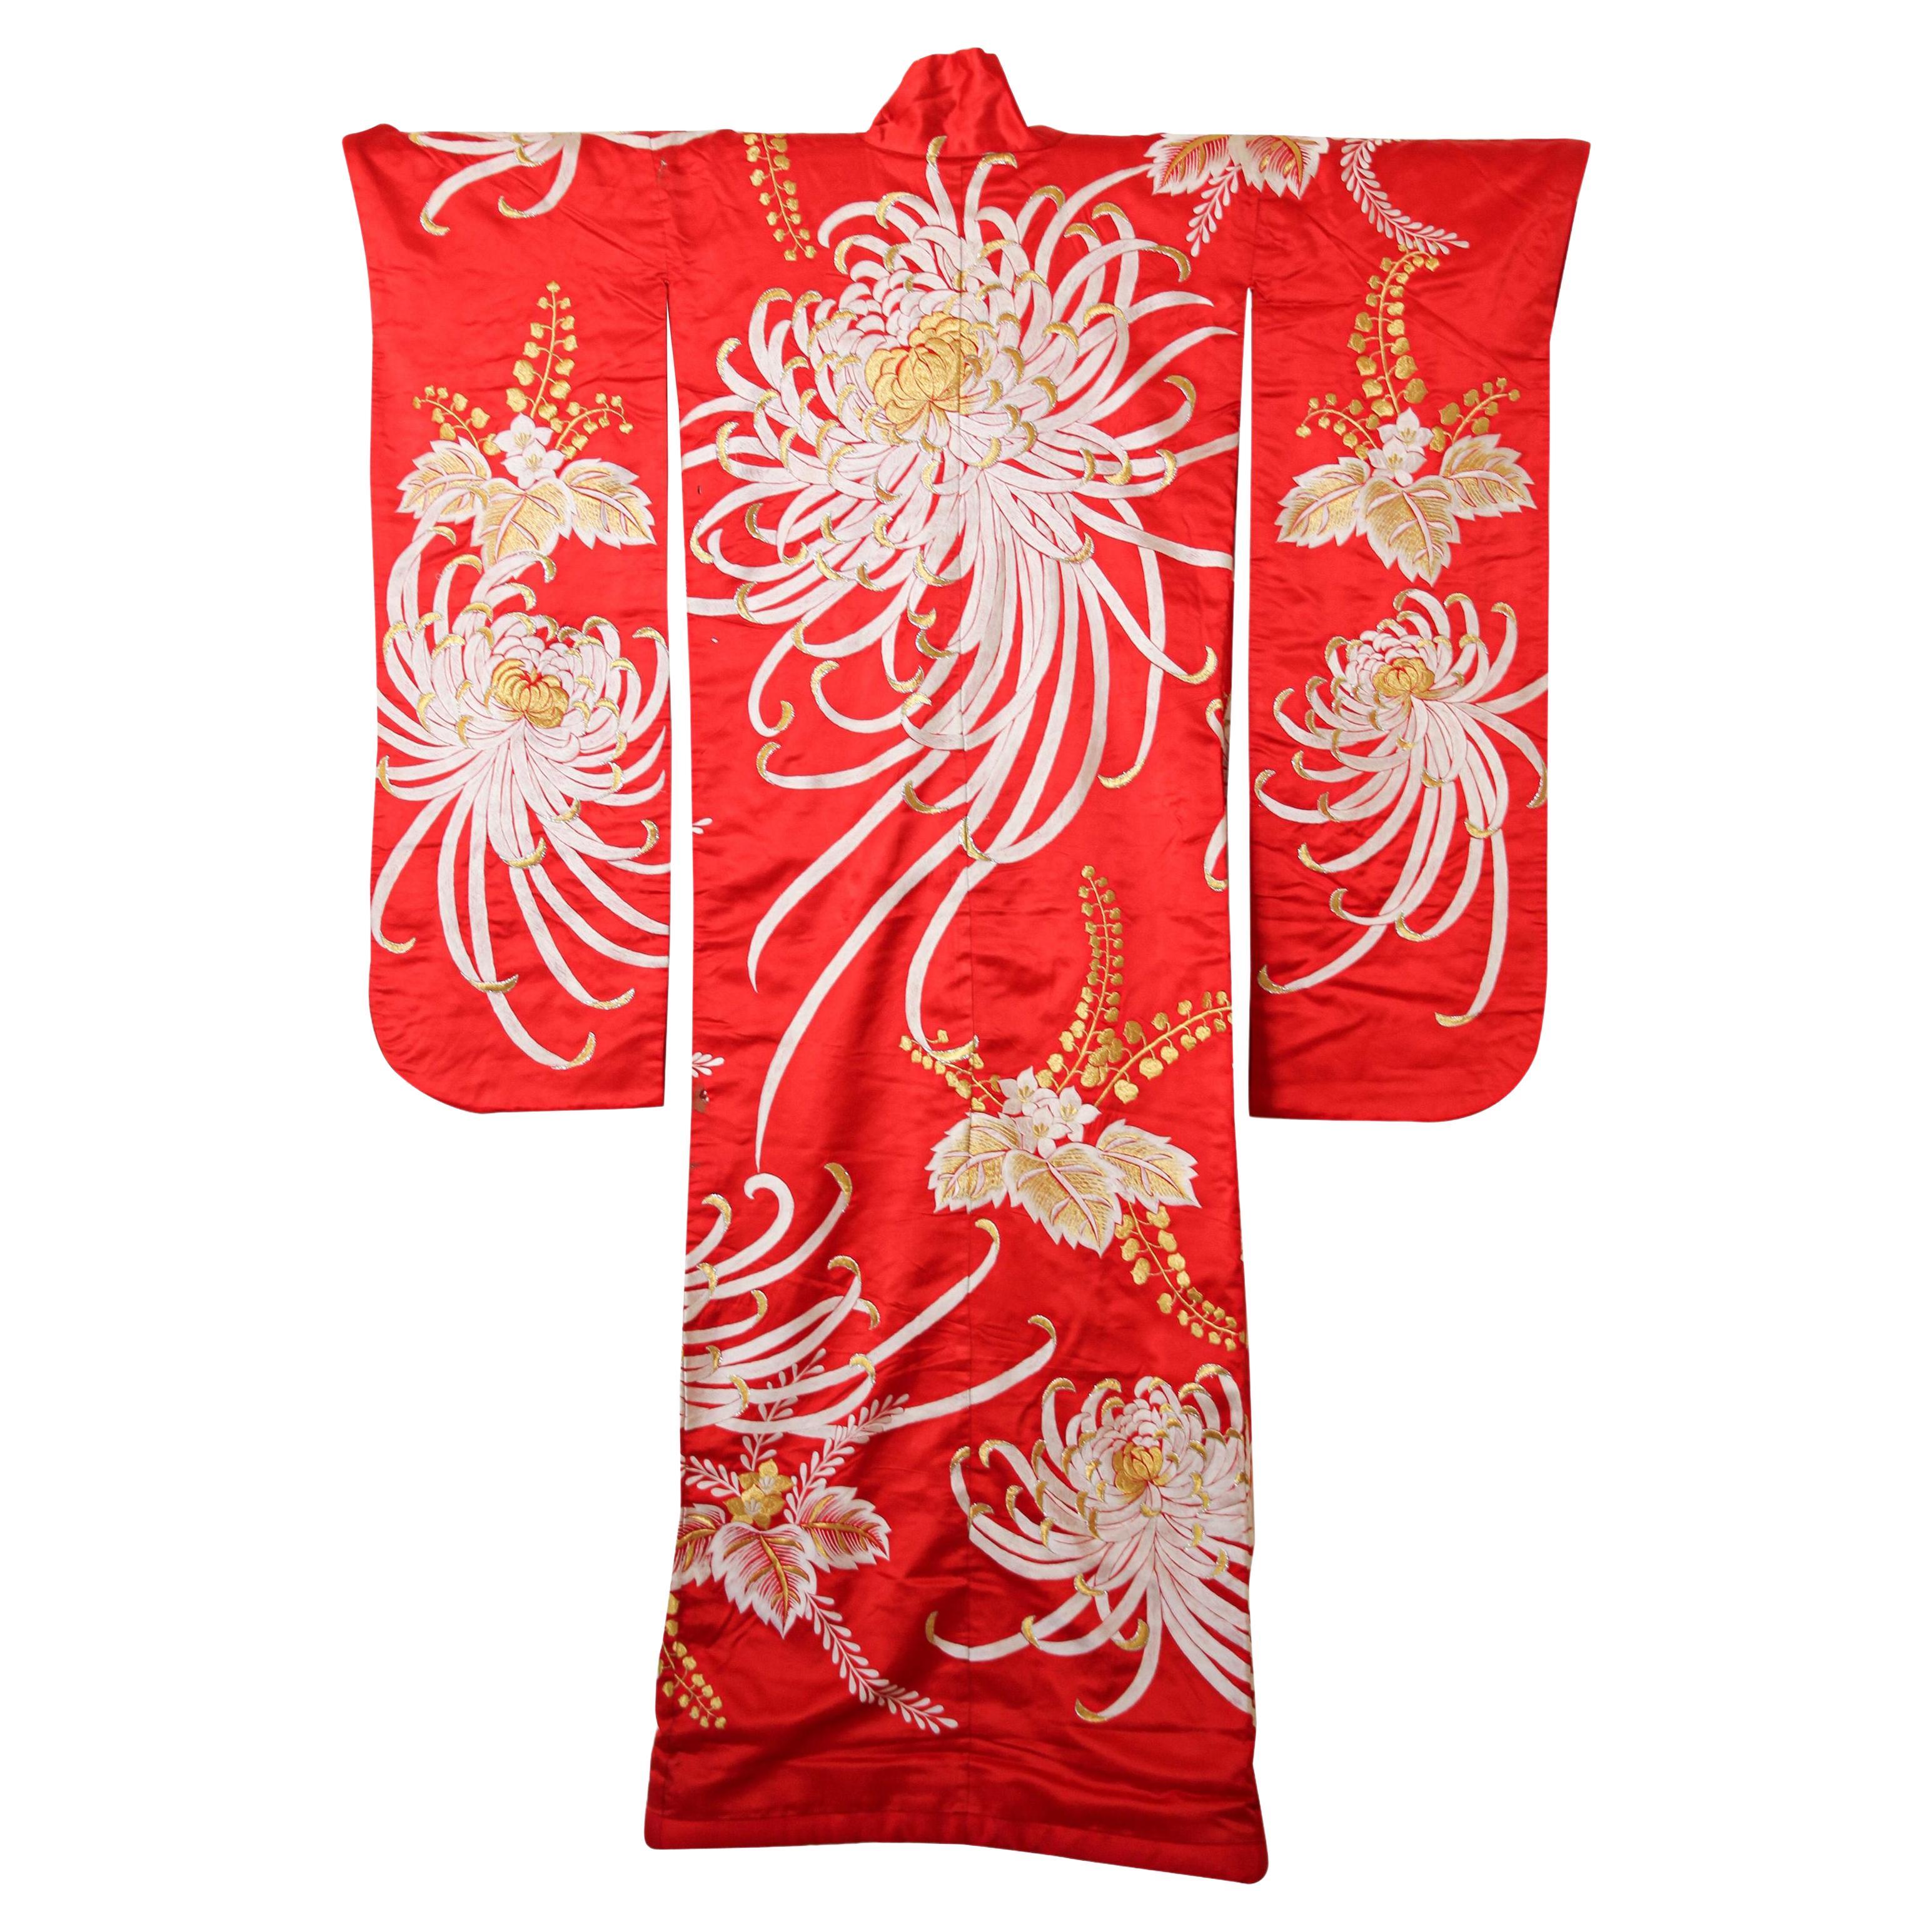 Ein Vintage Mitte des Jahrhunderts rote Farbe Seide Brokat sammelbar japanischen zeremoniellen Hochzeit Kimono. 
Einzigartiges handgefertigtes Exemplar.
Fabulous Museum Qualität zeremoniellen Stück in reiner Seide mit komplizierten detaillierten